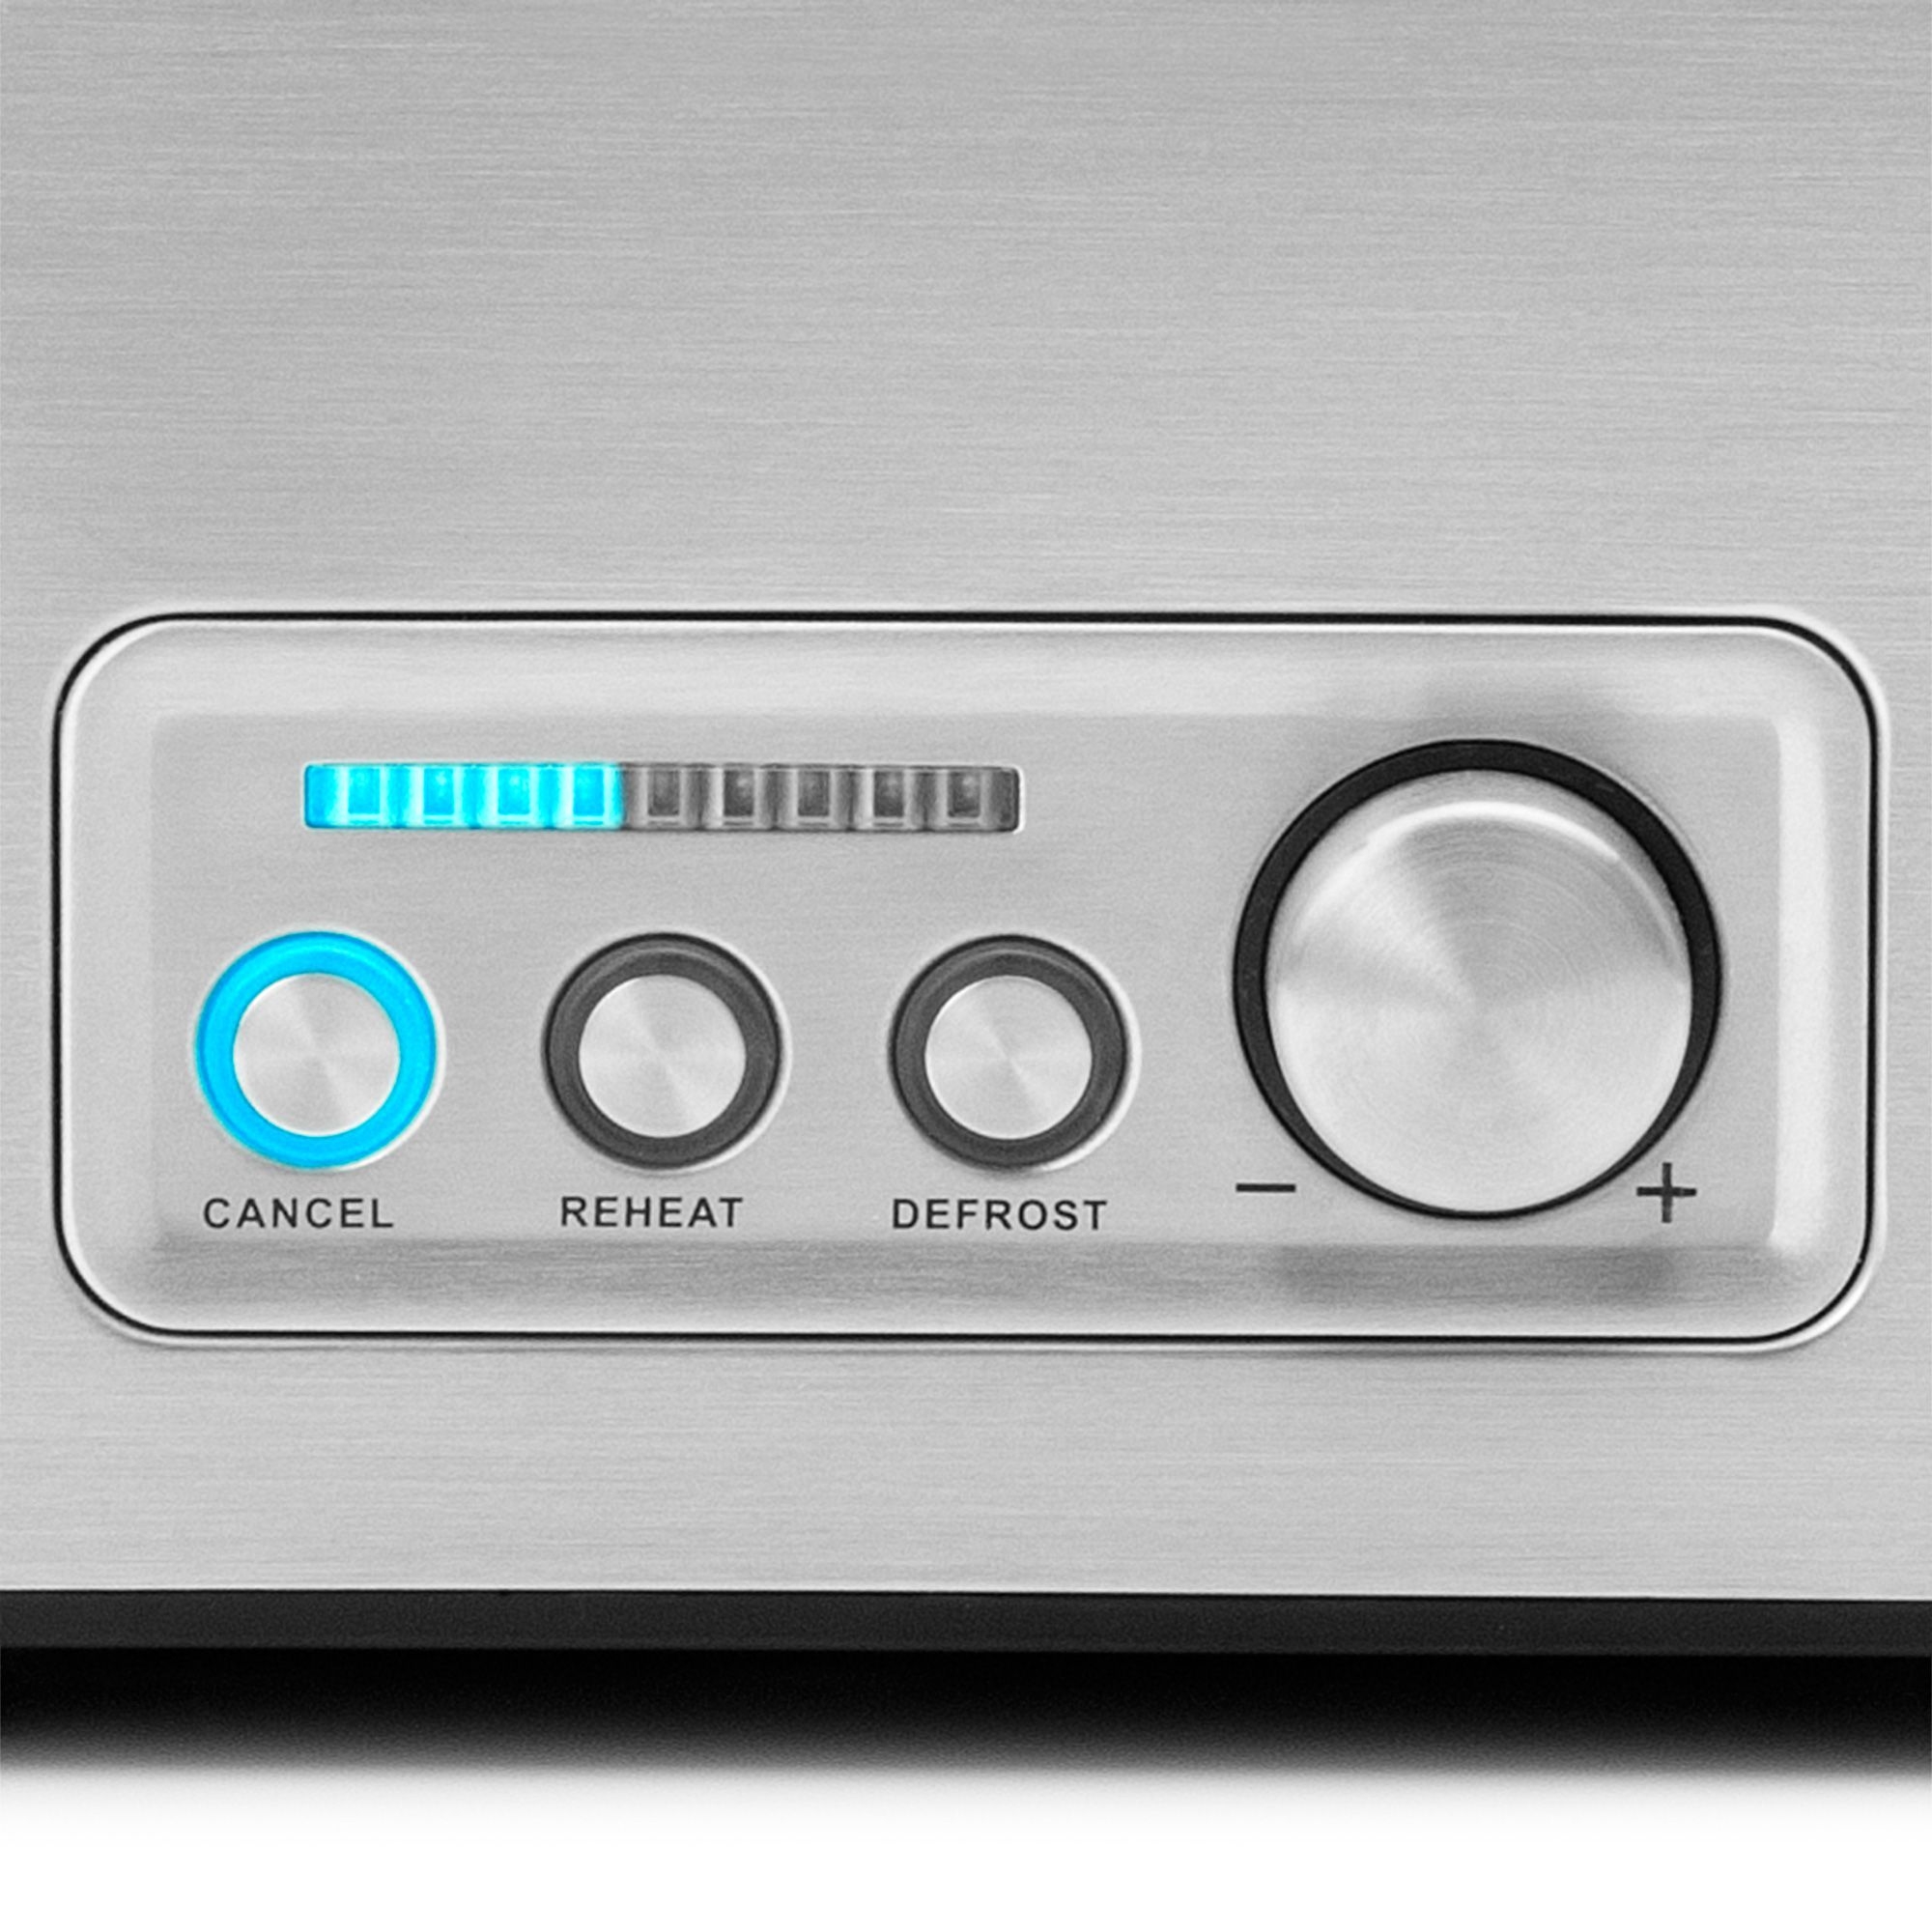 Gastroback - Design Toaster Pro 4S